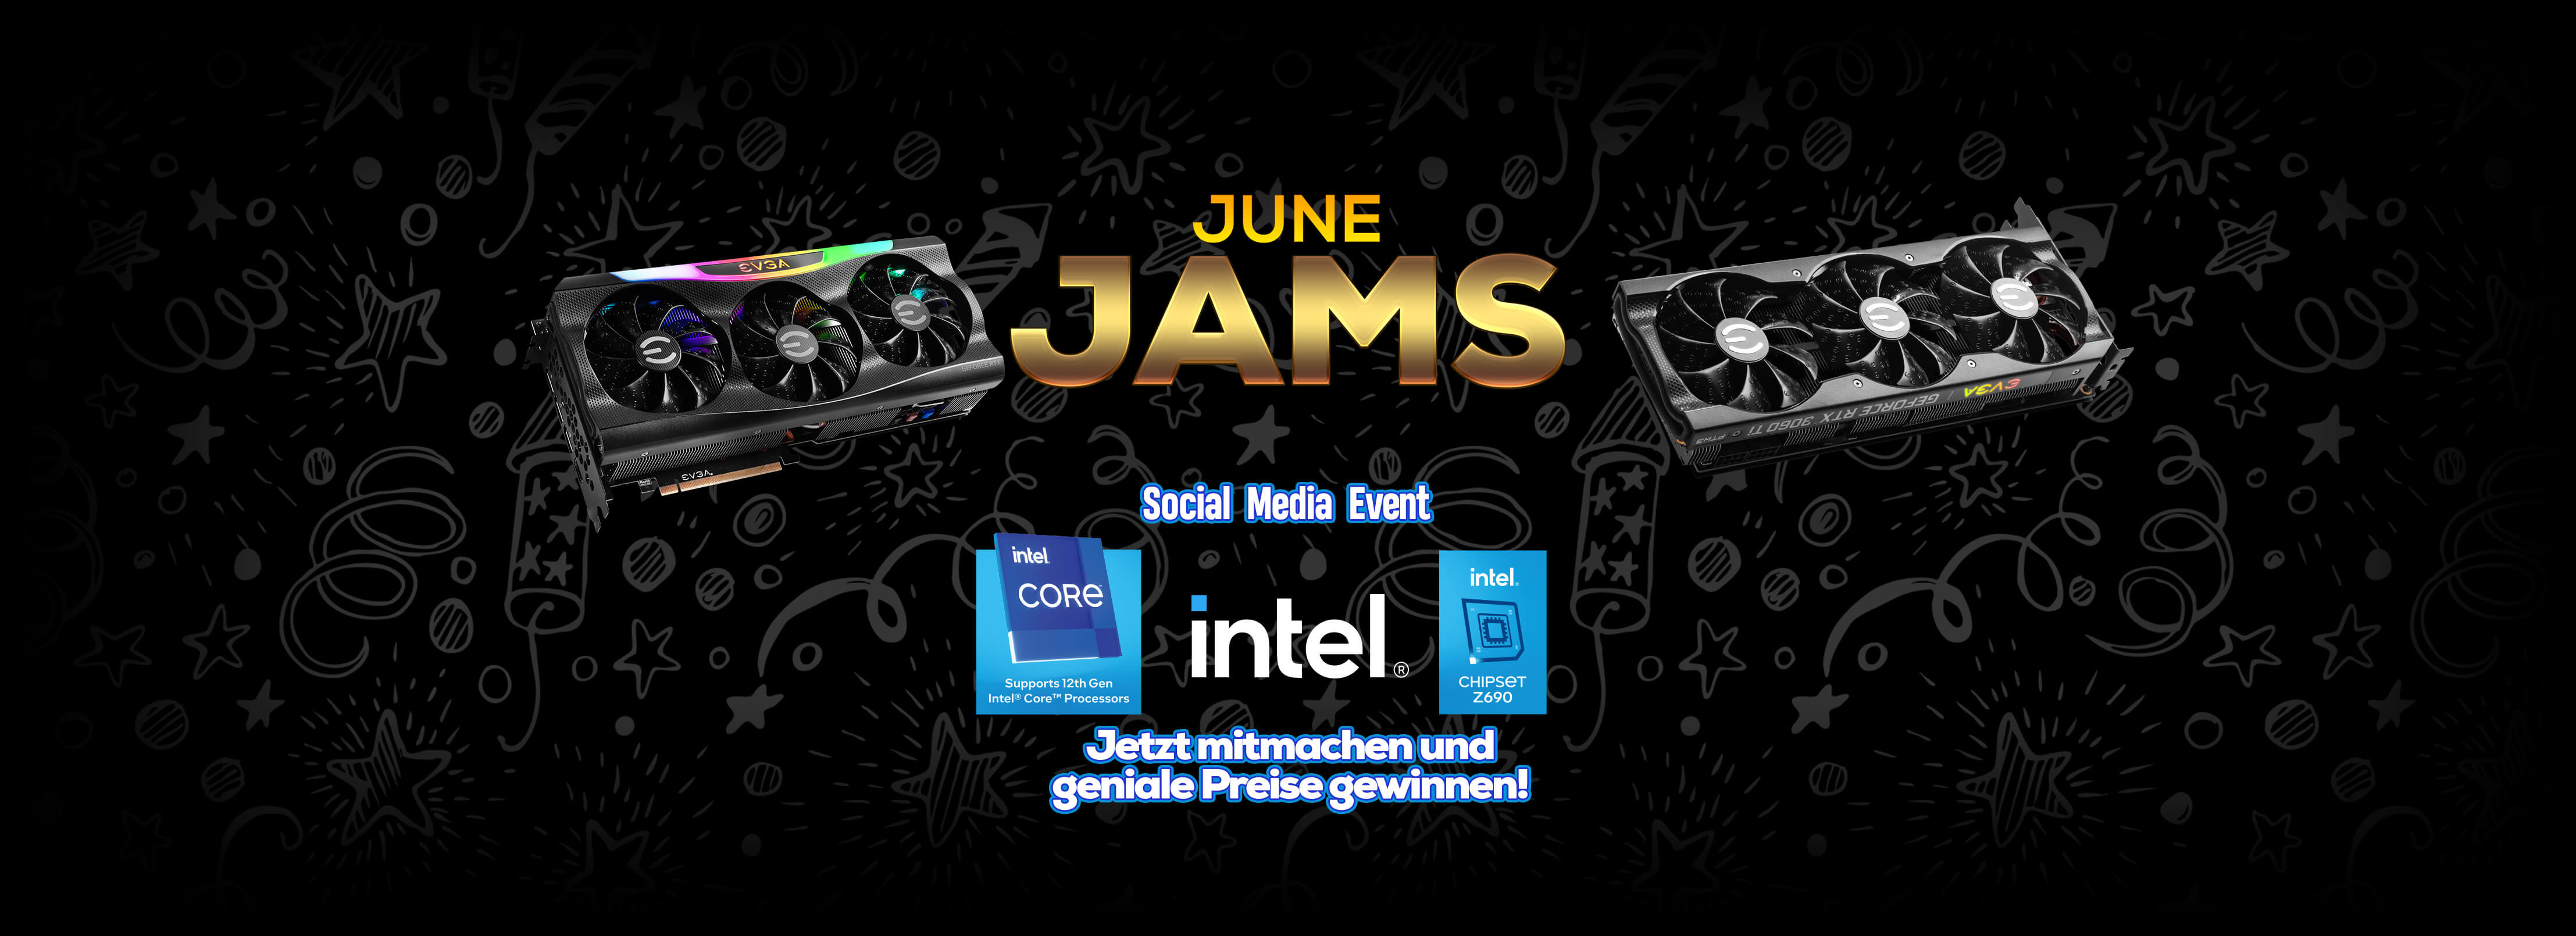 June Jams Social Media Event